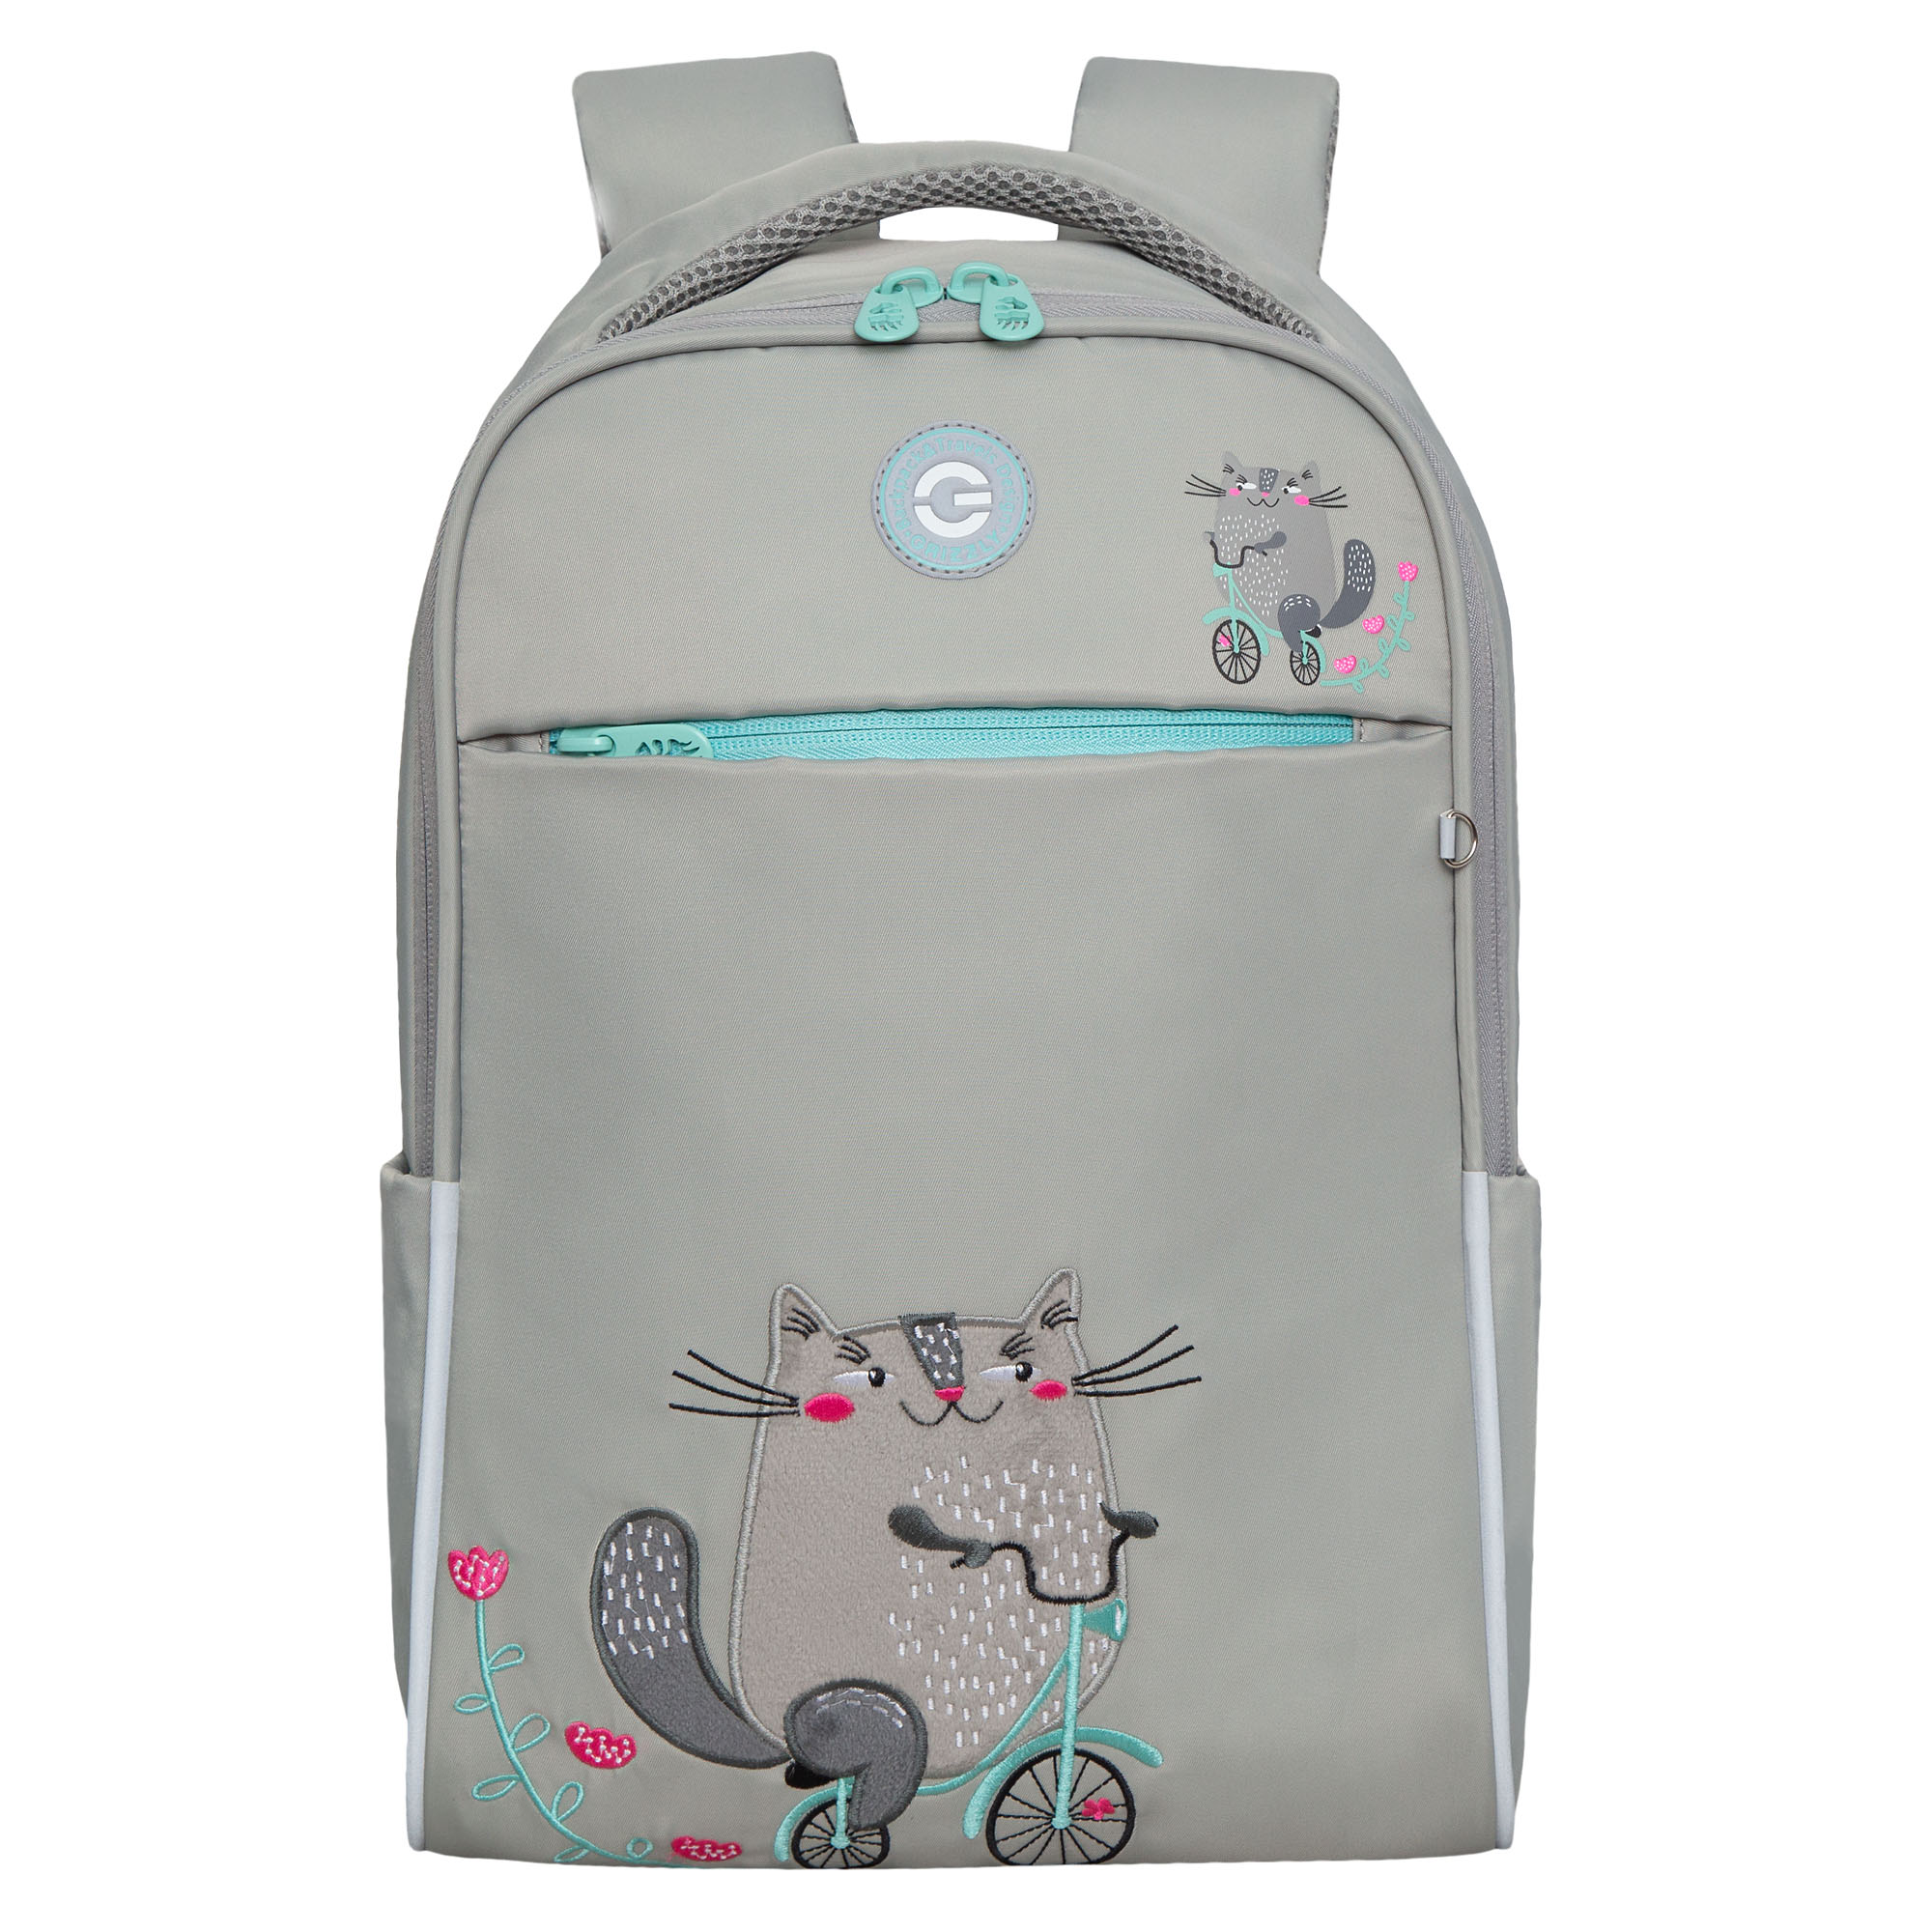 Рюкзак Grizzly школьный для девочки RG-367-3 2 серый рюкзак grizzly с отделением для ноутбука анатомический серый ru 434 3 1